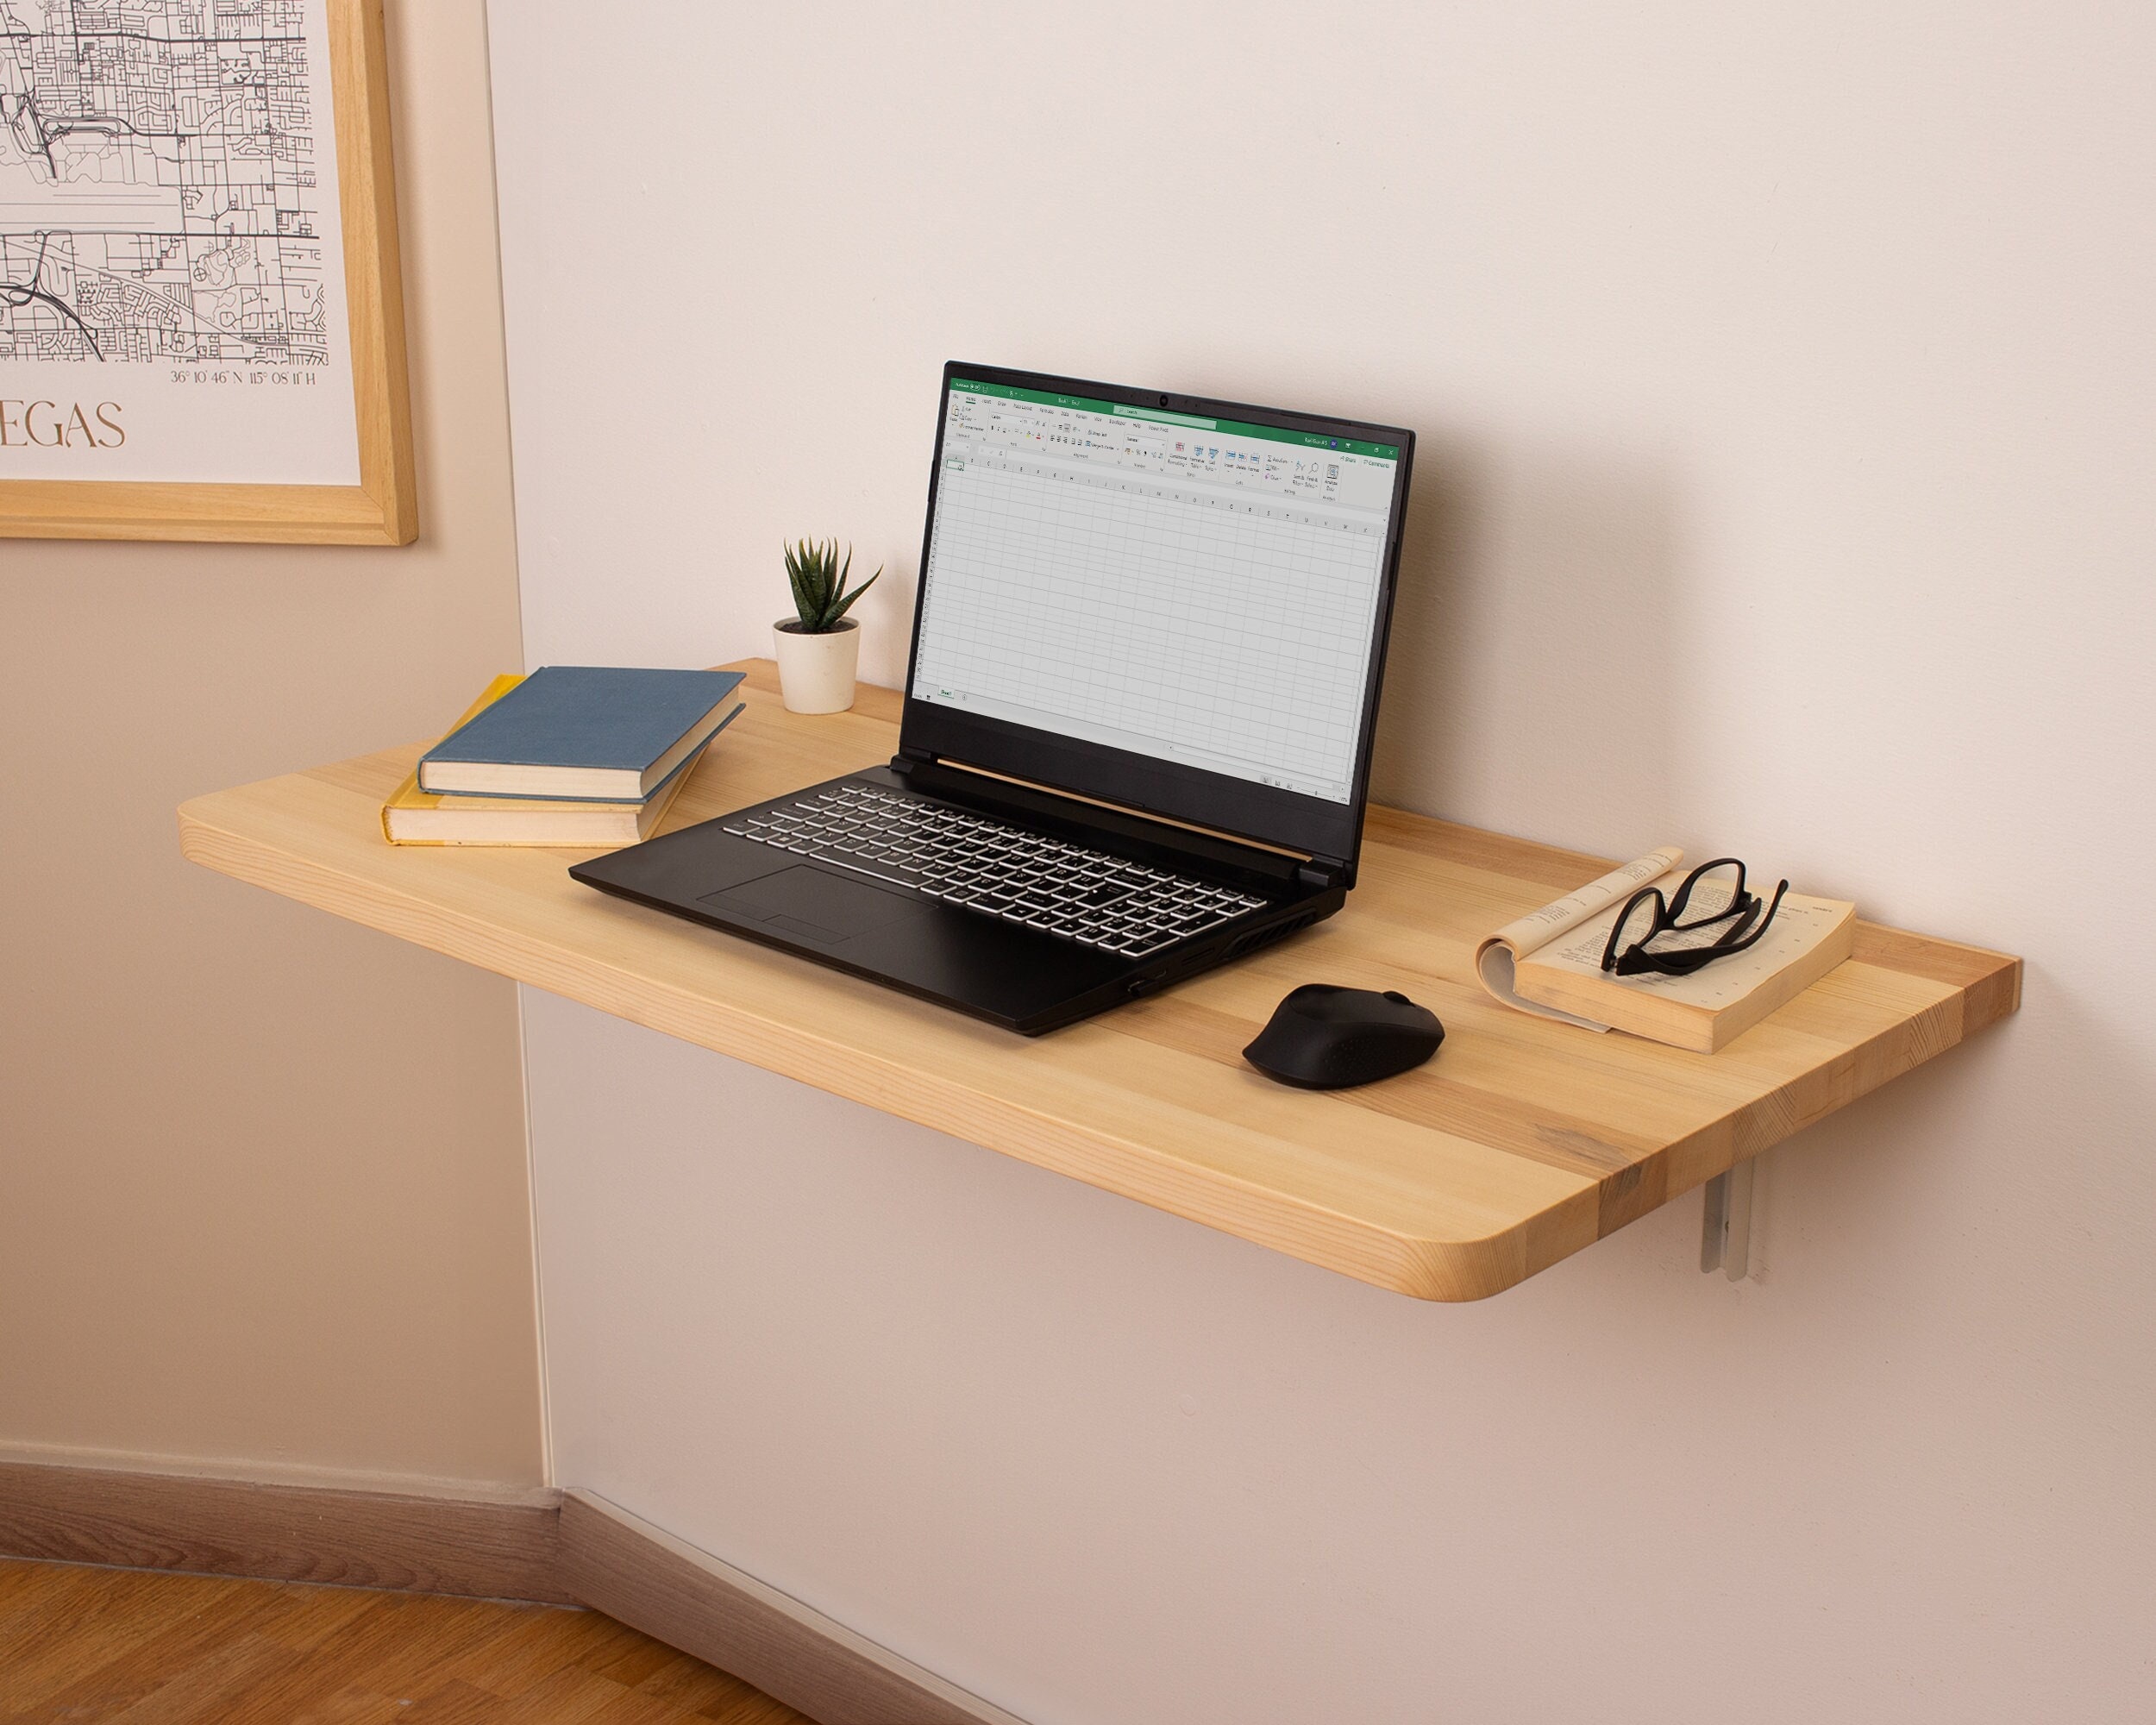 Escritorio industrial para computadora con estantes, mesa de estudio de  madera rústica y metal de 55 pulgadas para oficina en casa, gris